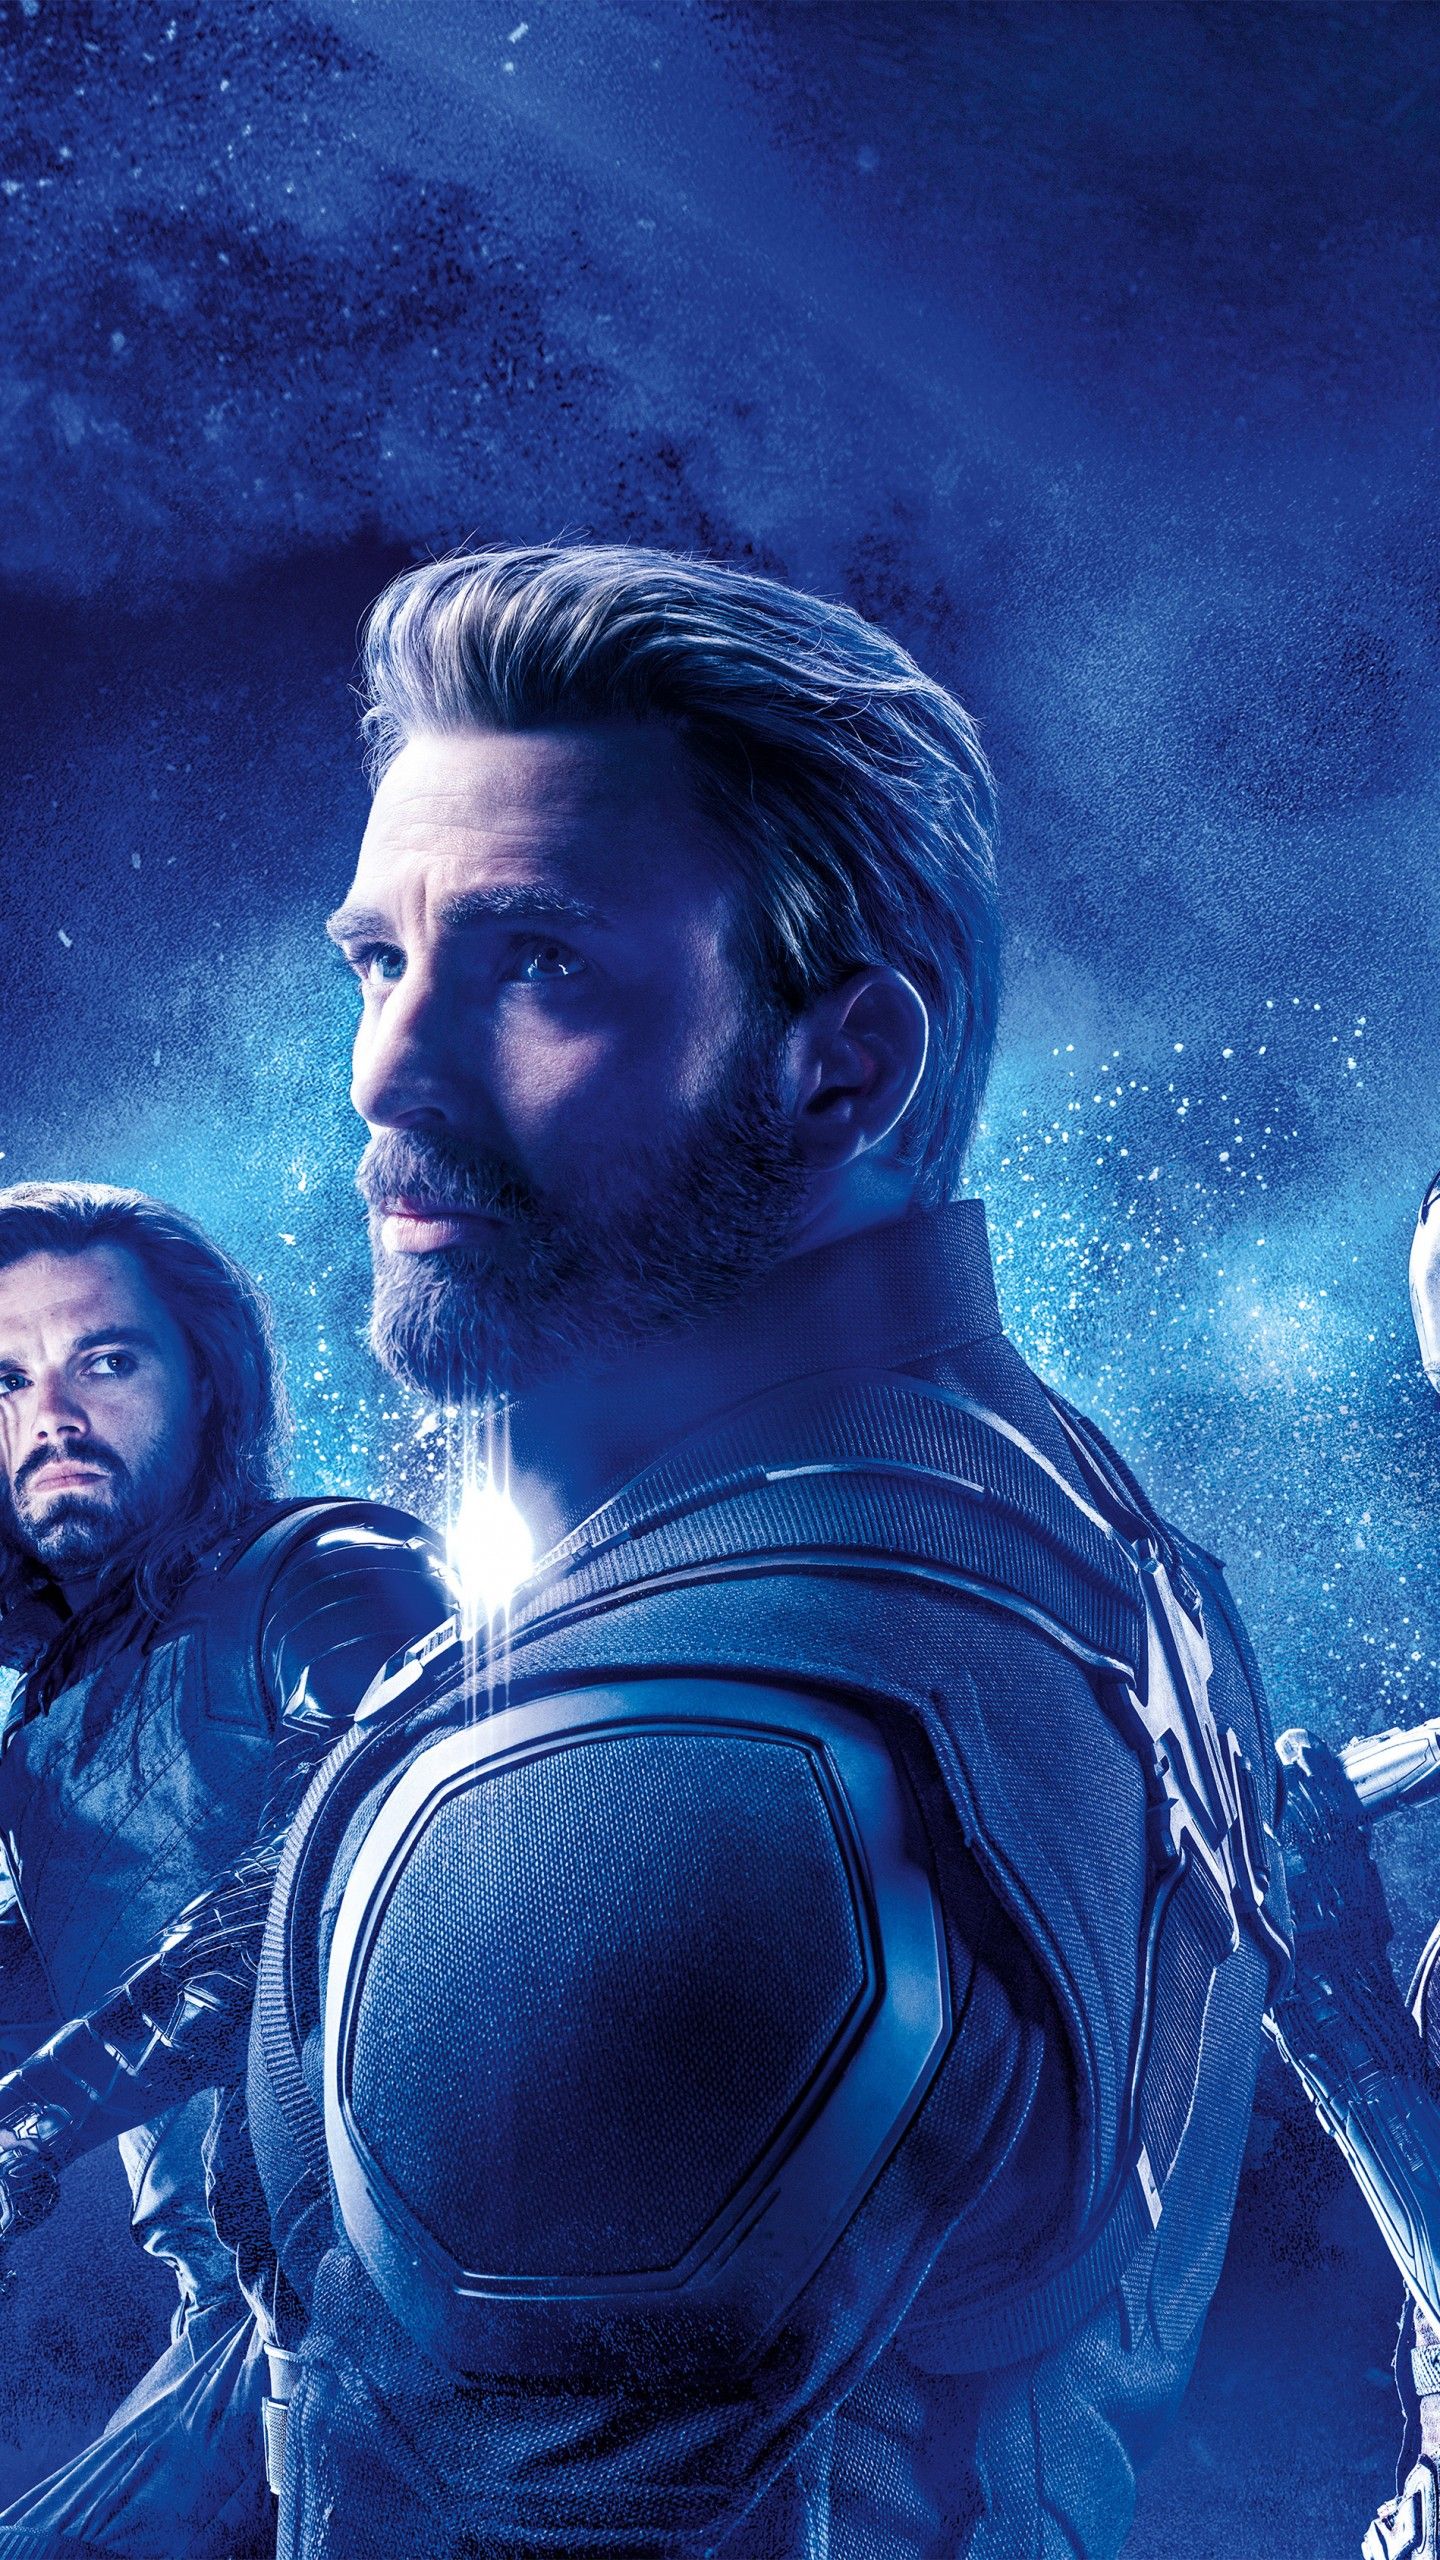 Wallpaper Avengers: Endgame, Captain America, Bucky Barnes, Nebula, 4K, 5K, Movies,. Wallpaper for iPhone, Android, Mobile and Desktop